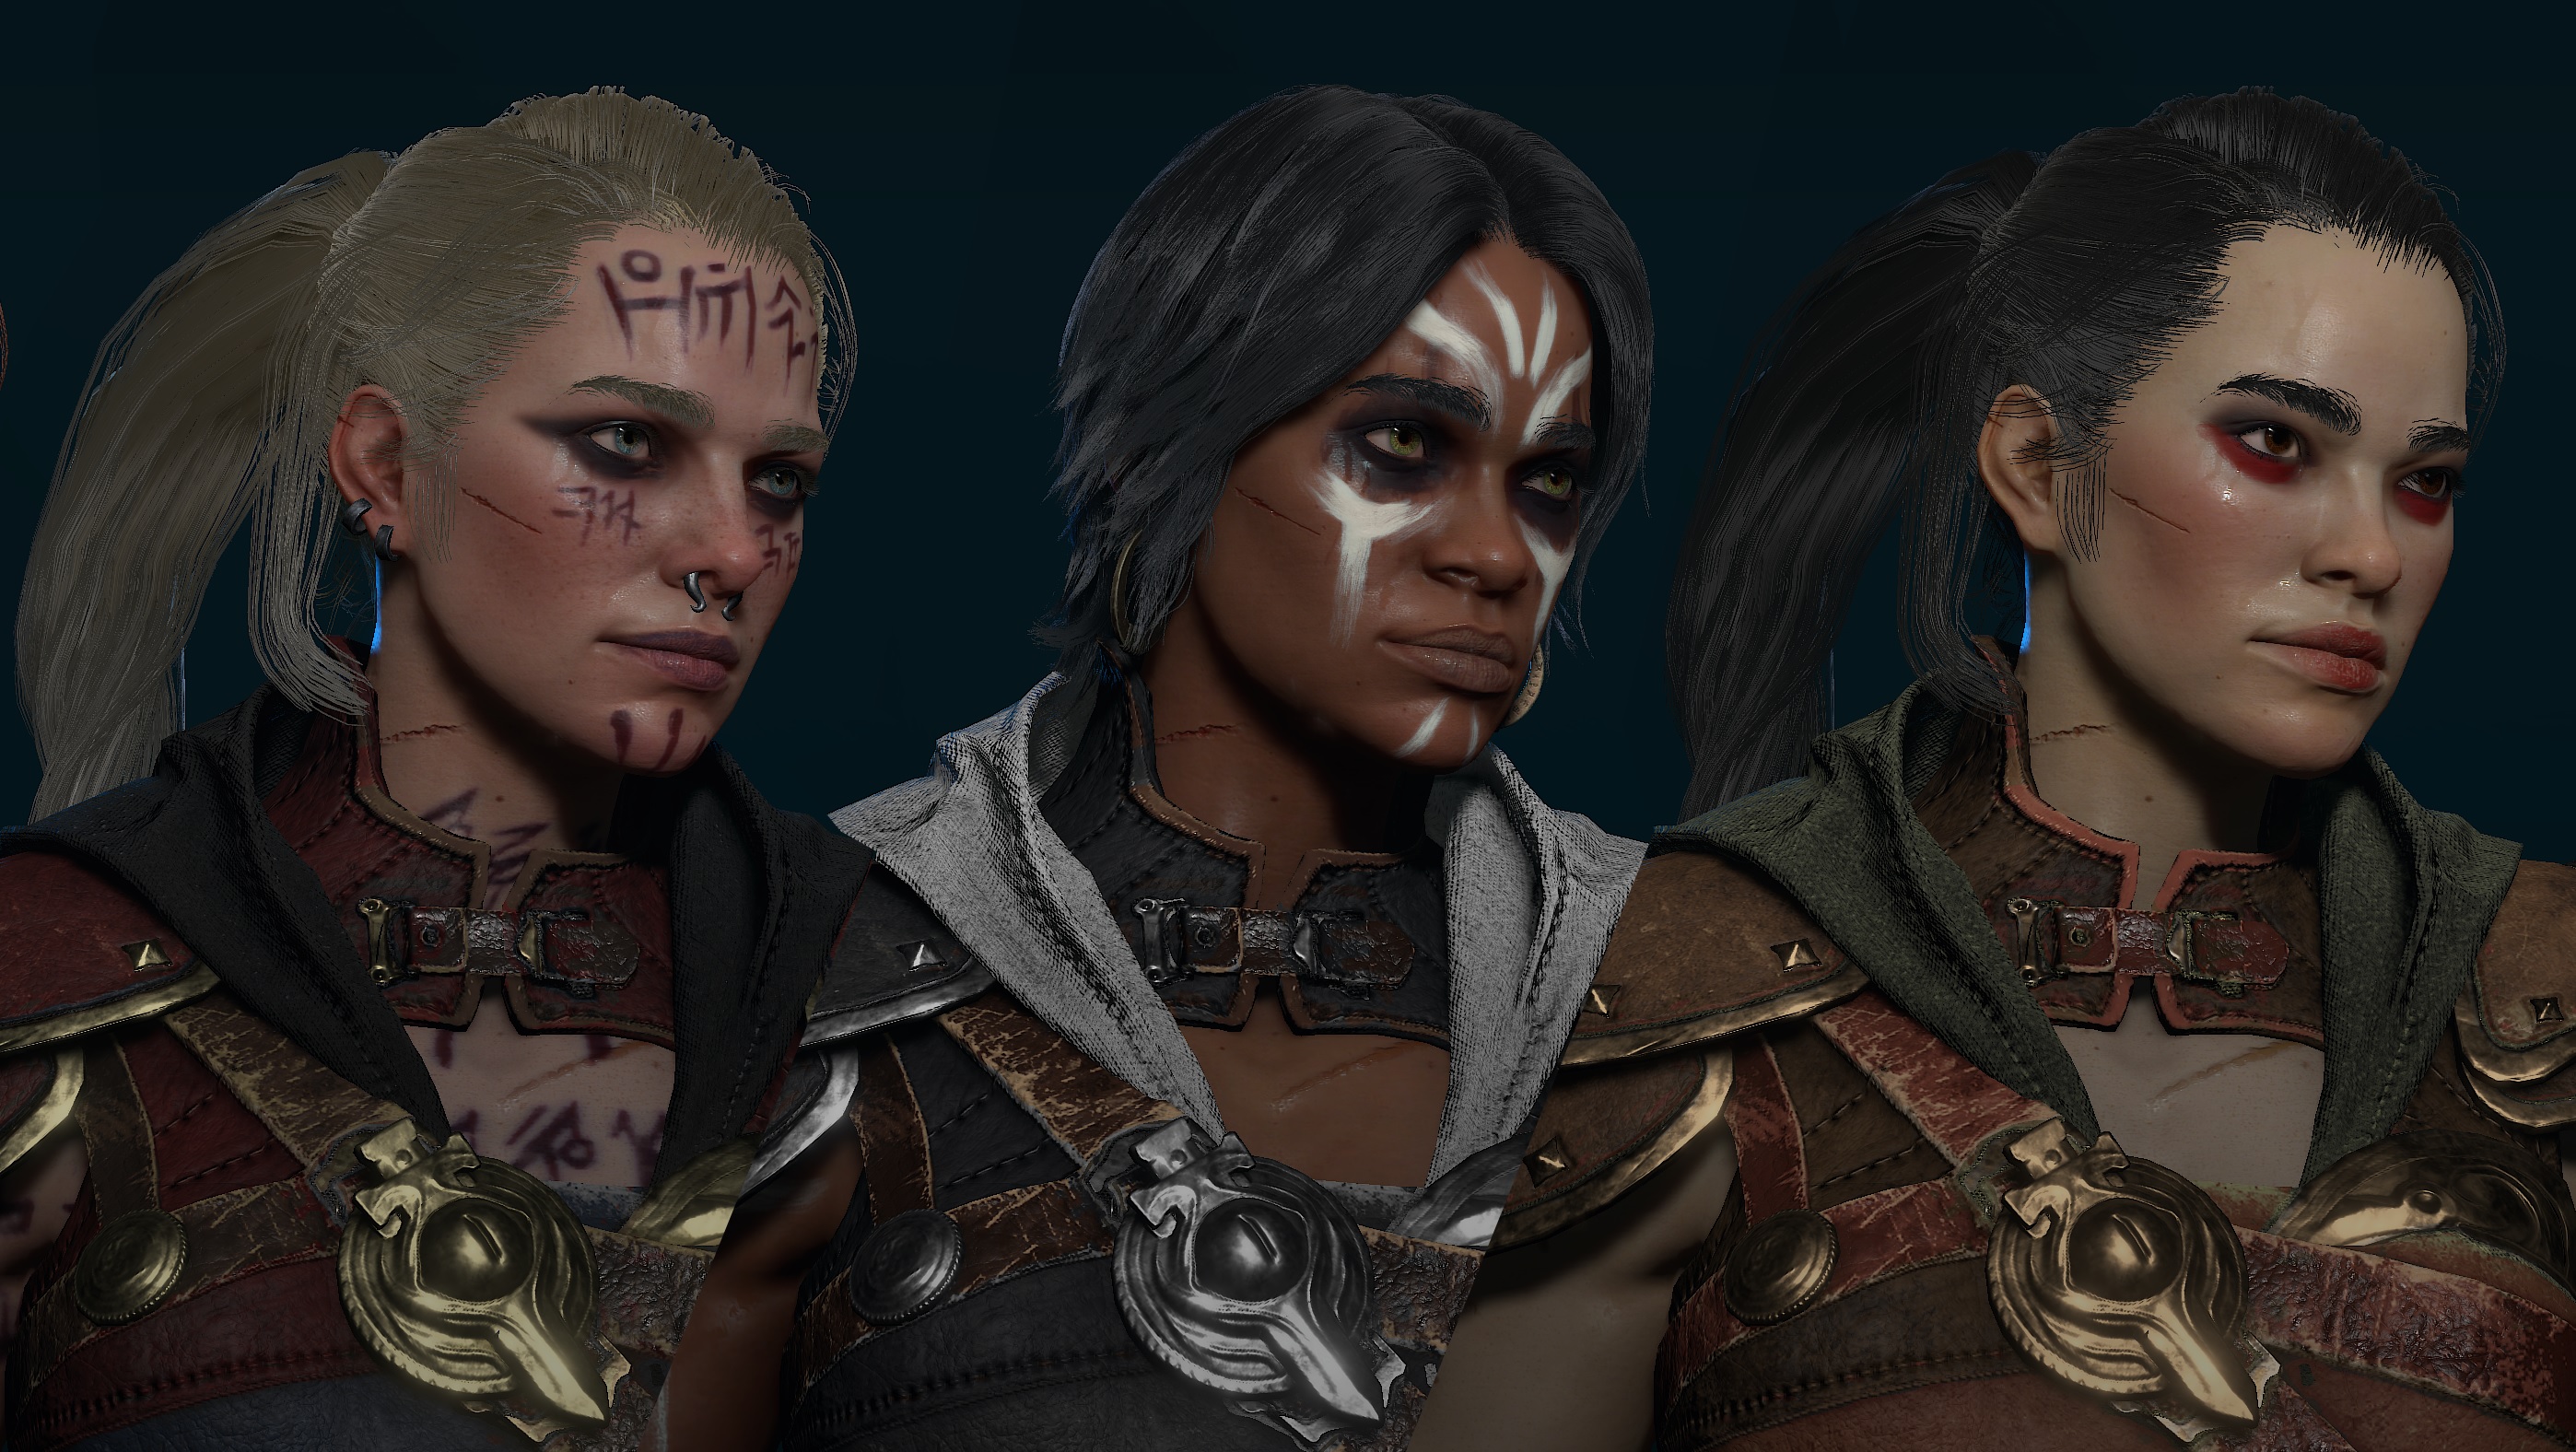 Captura de pantalla de Diablo 4 en desarrollo de tres personajes druidas con diferentes peinados, marcas faciales y colores de piel.